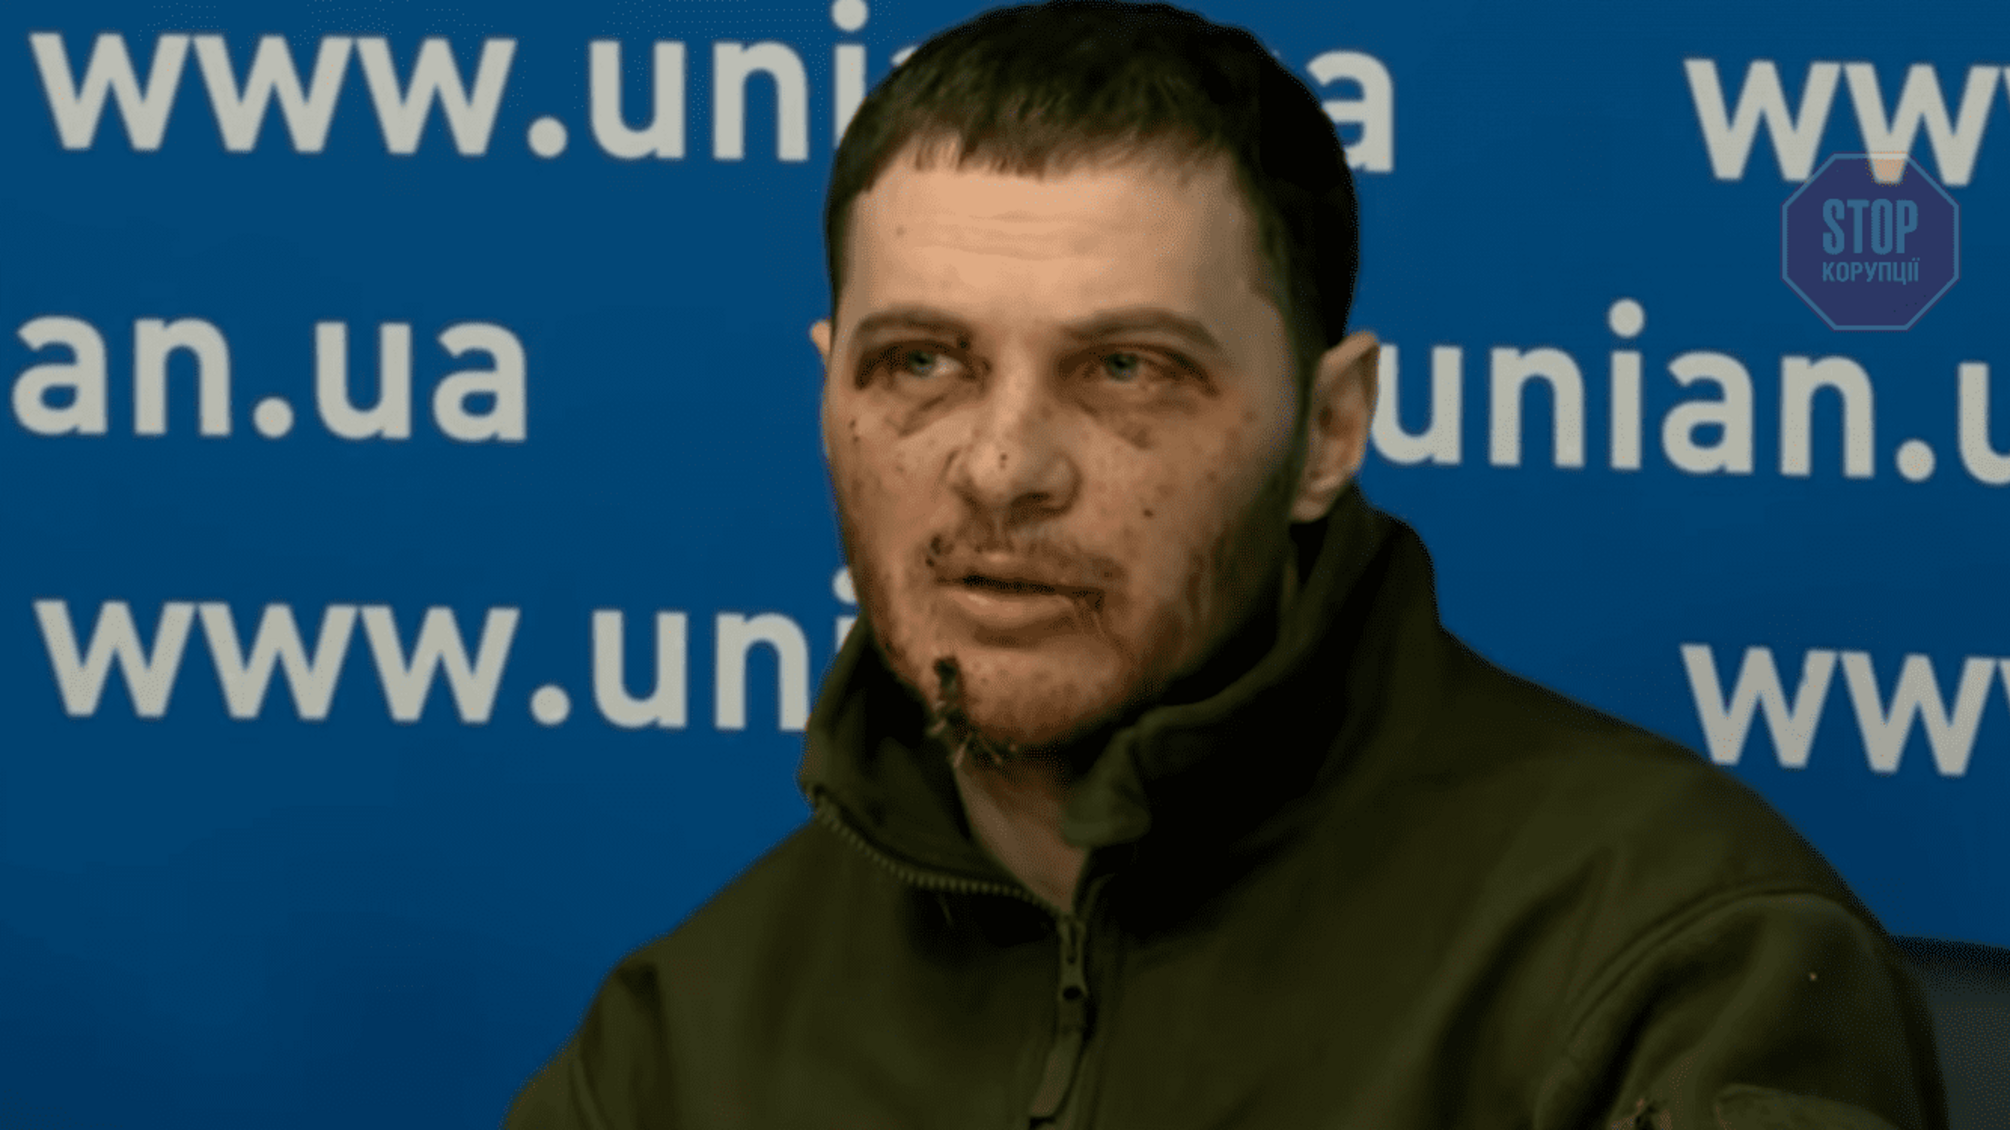 Пресс-конференция российских пленных: после взятия Киева мы должны были подавить мирное население